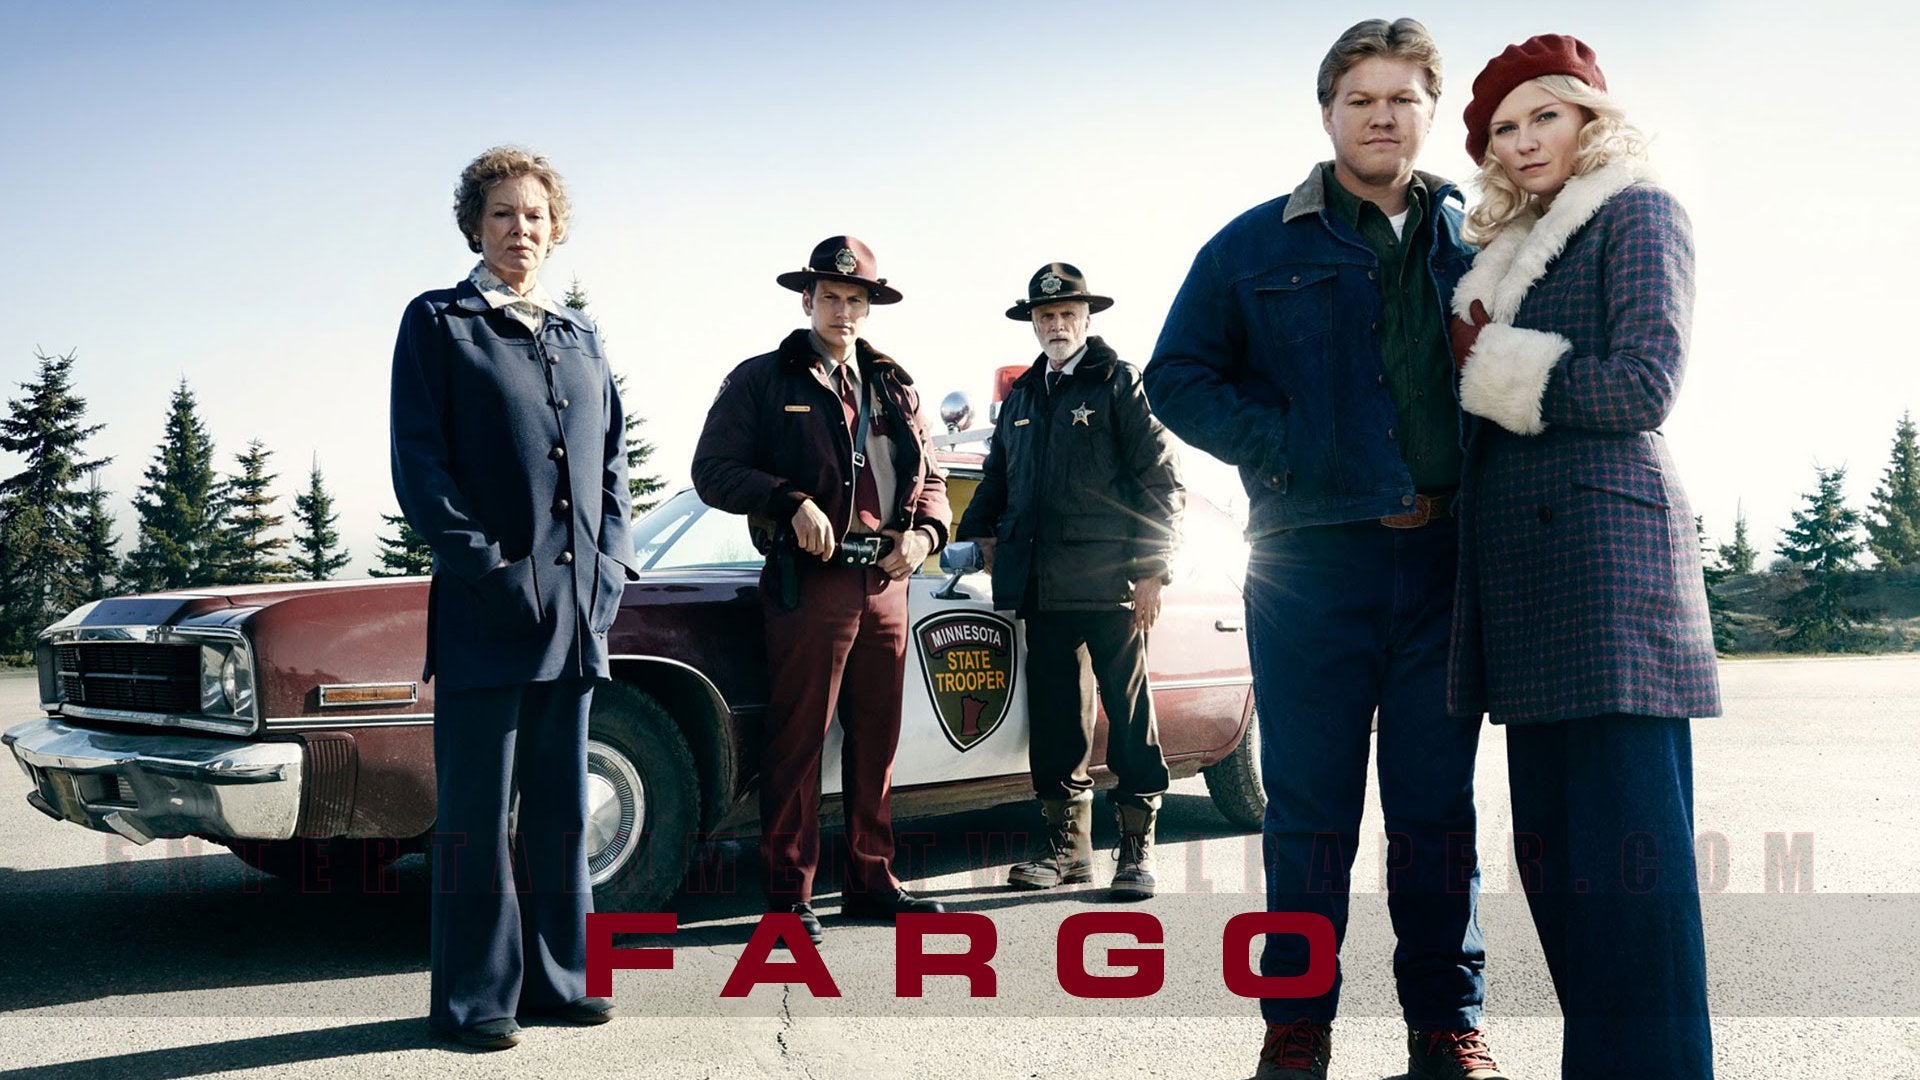 Flash Drive Fargo Season 2